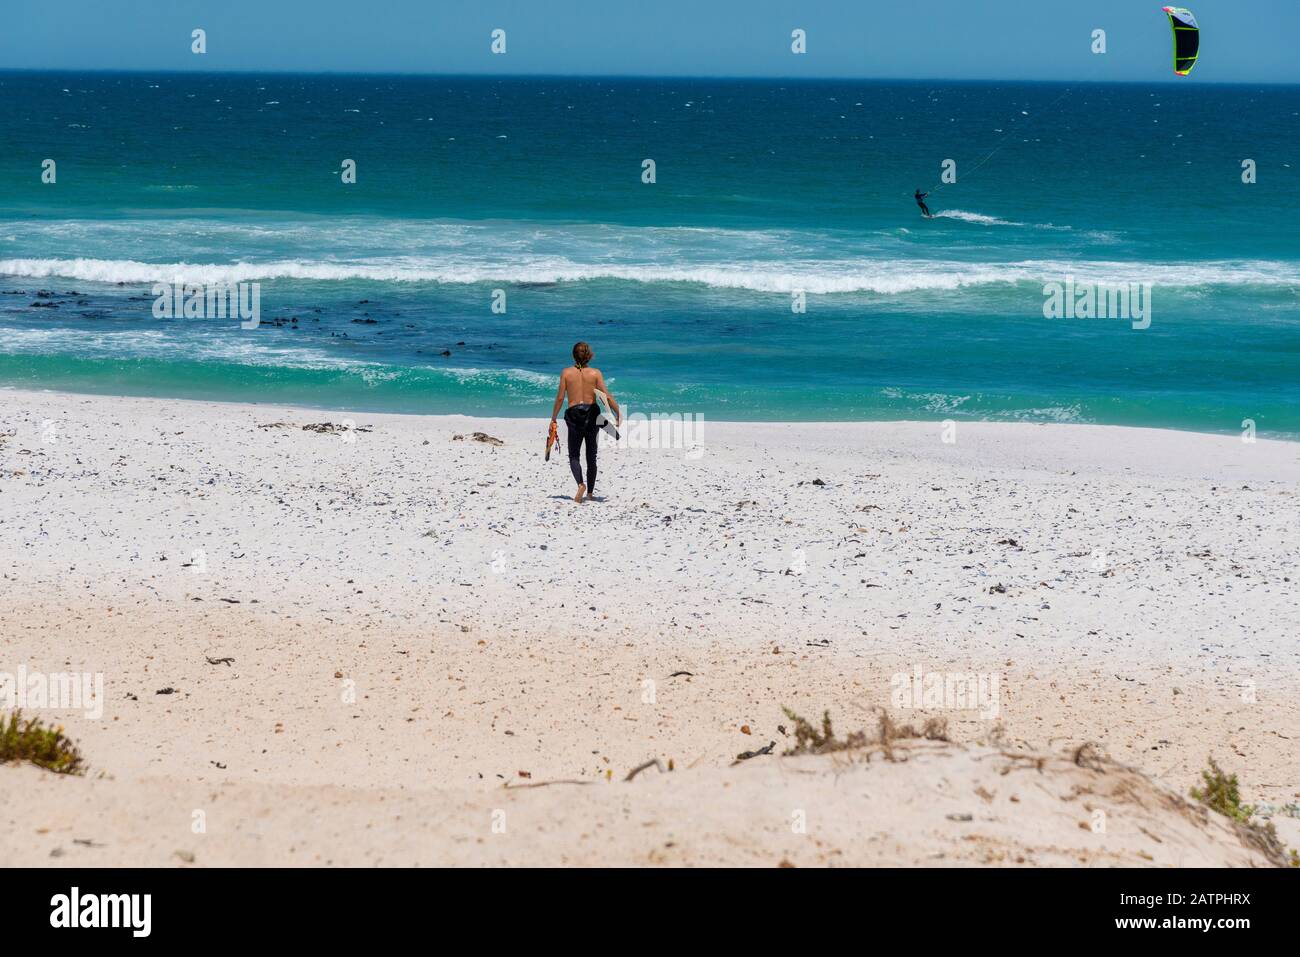 Le surfeur descend le long du sable à la célèbre plage de surf de cerf-volant à Haakgat point, Otto due Plessis Drive, Melkbosstrand, Capte Town, Afrique du Sud Banque D'Images